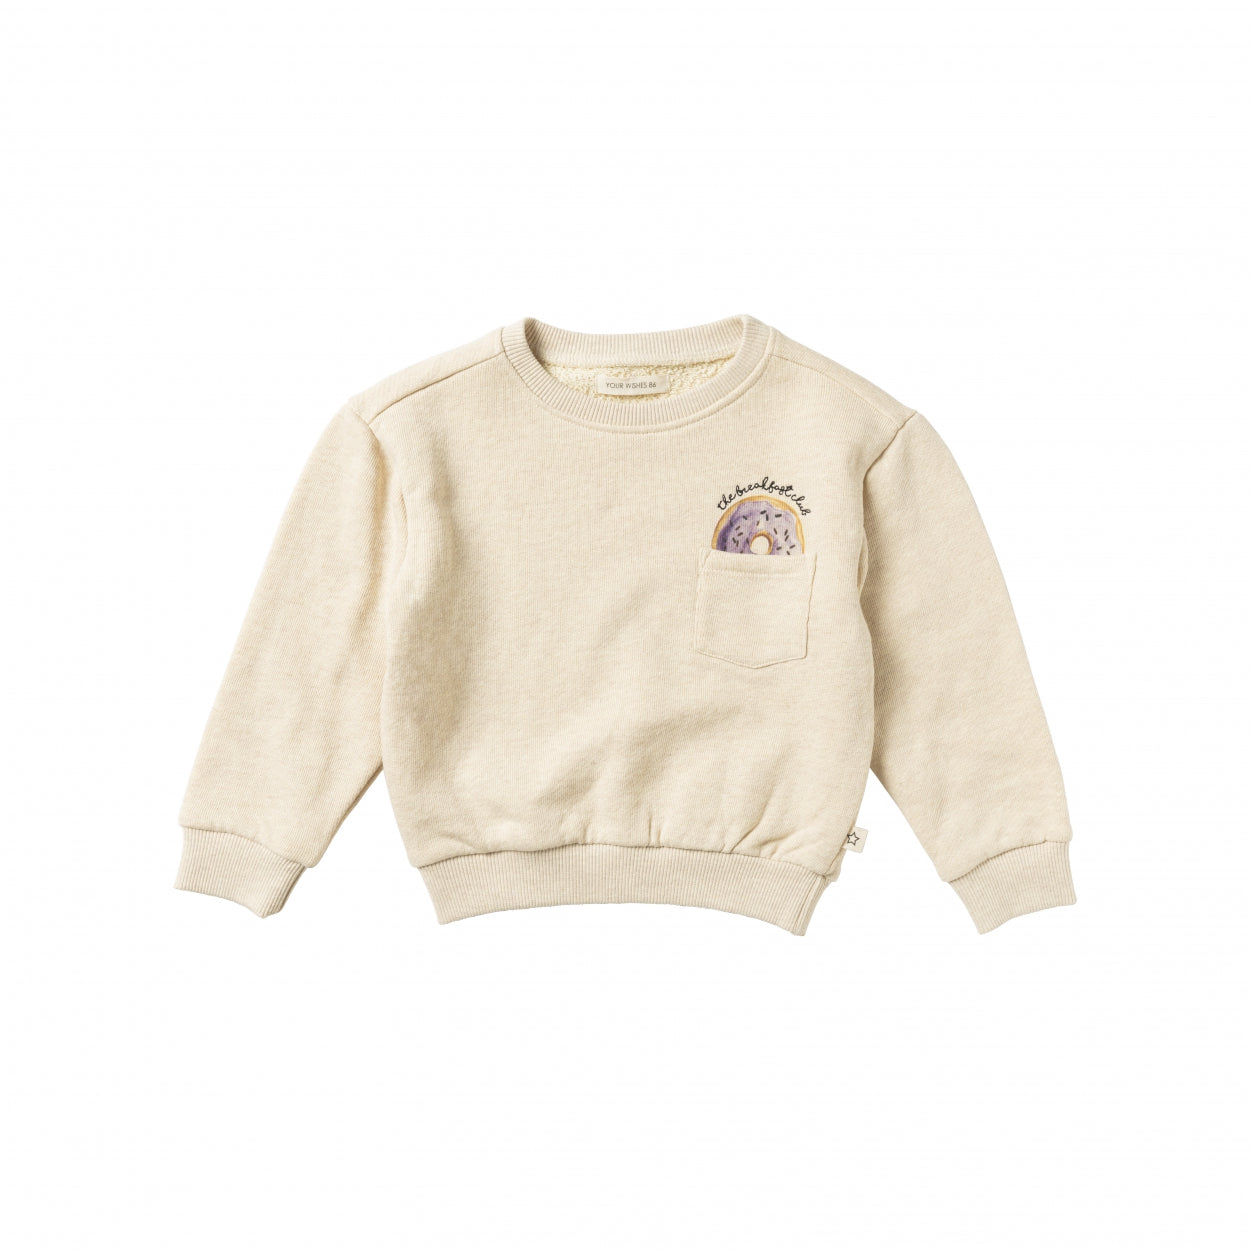 Jongens Sweater Donut | Bentley van Your Wishes in de kleur Melange in maat 122-128.